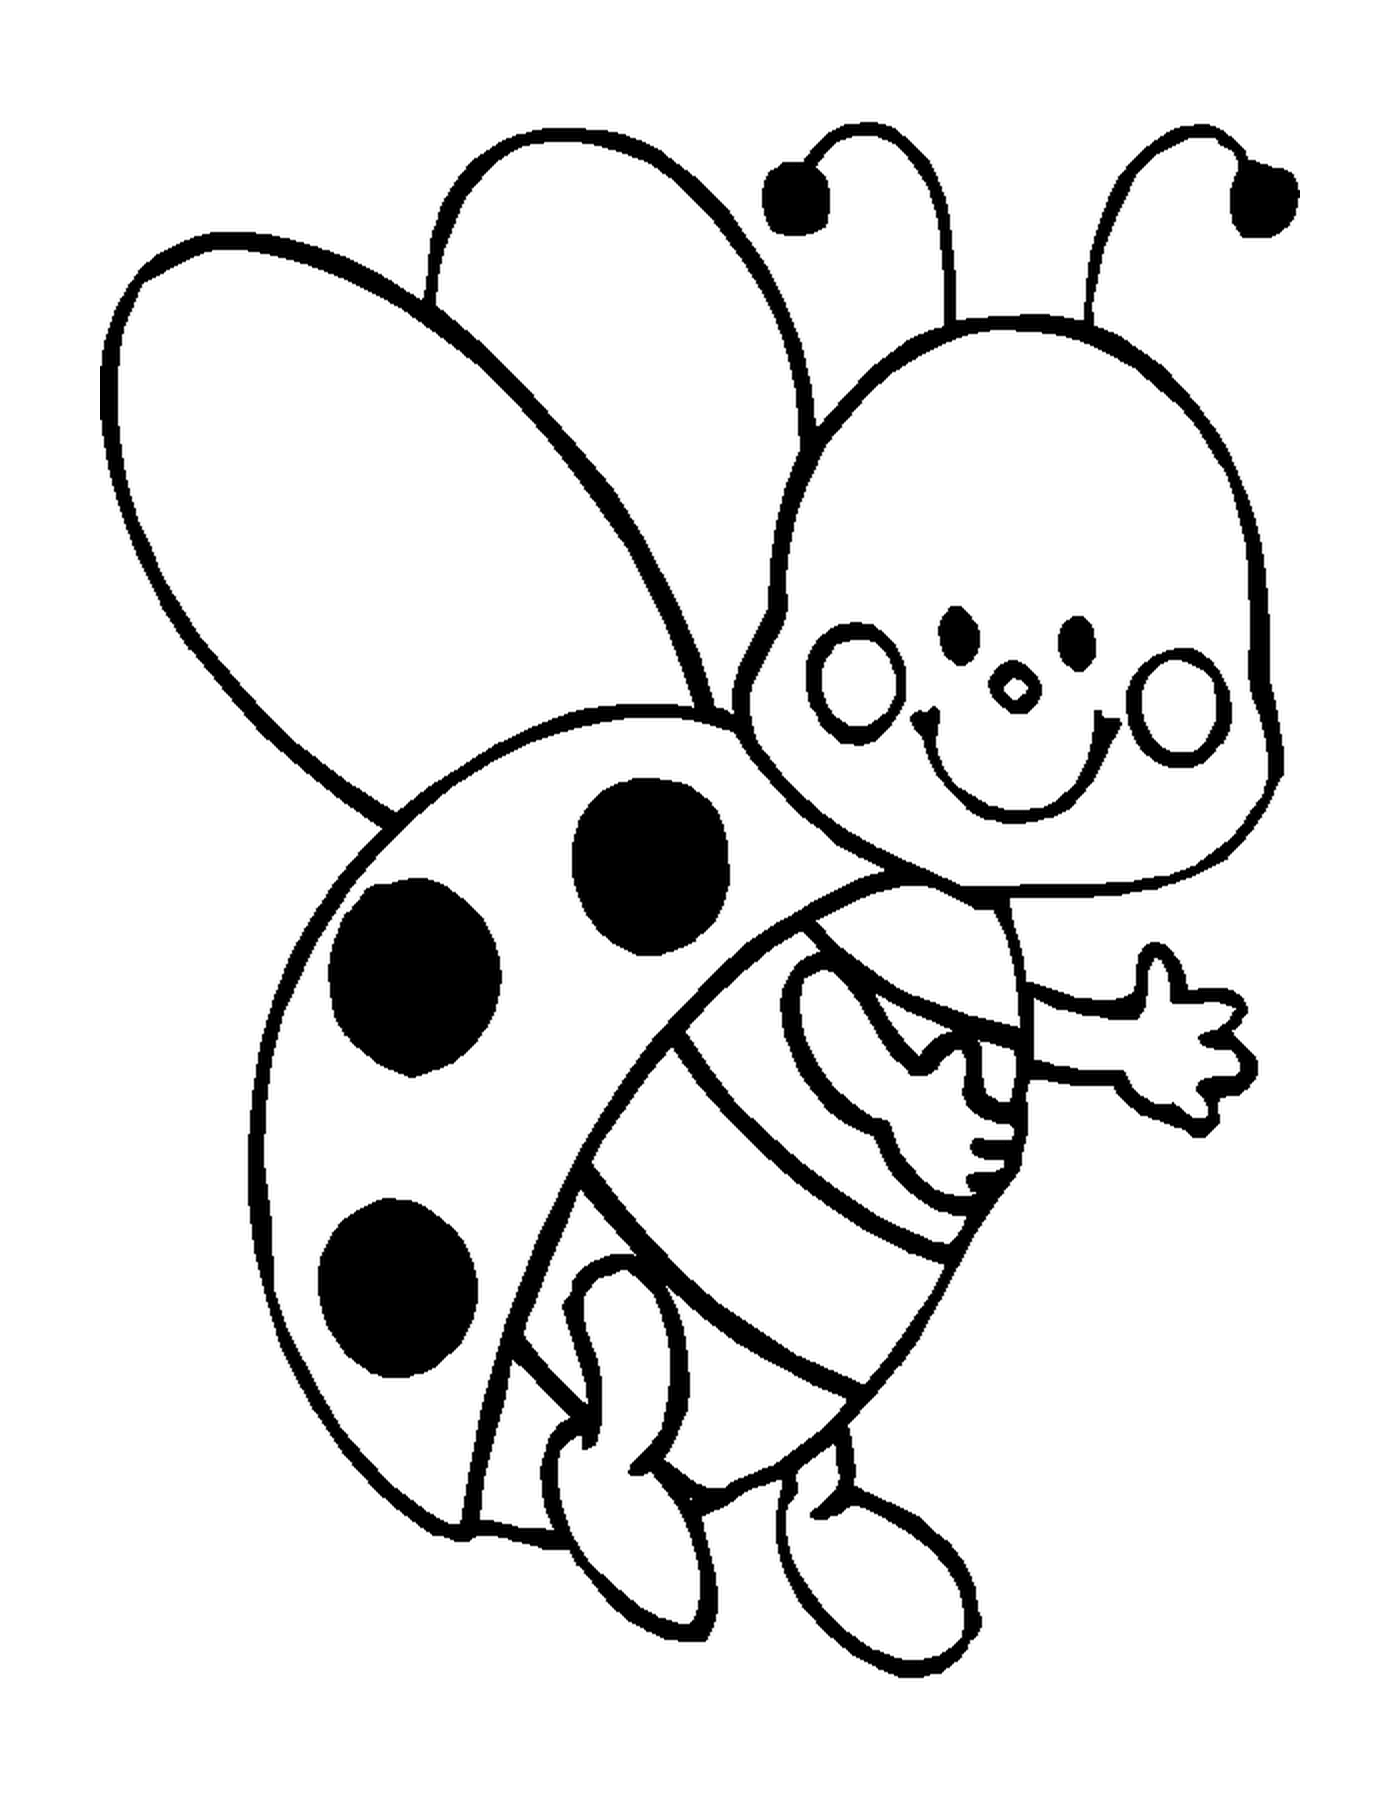  Ladybug com um sorriso radiante 